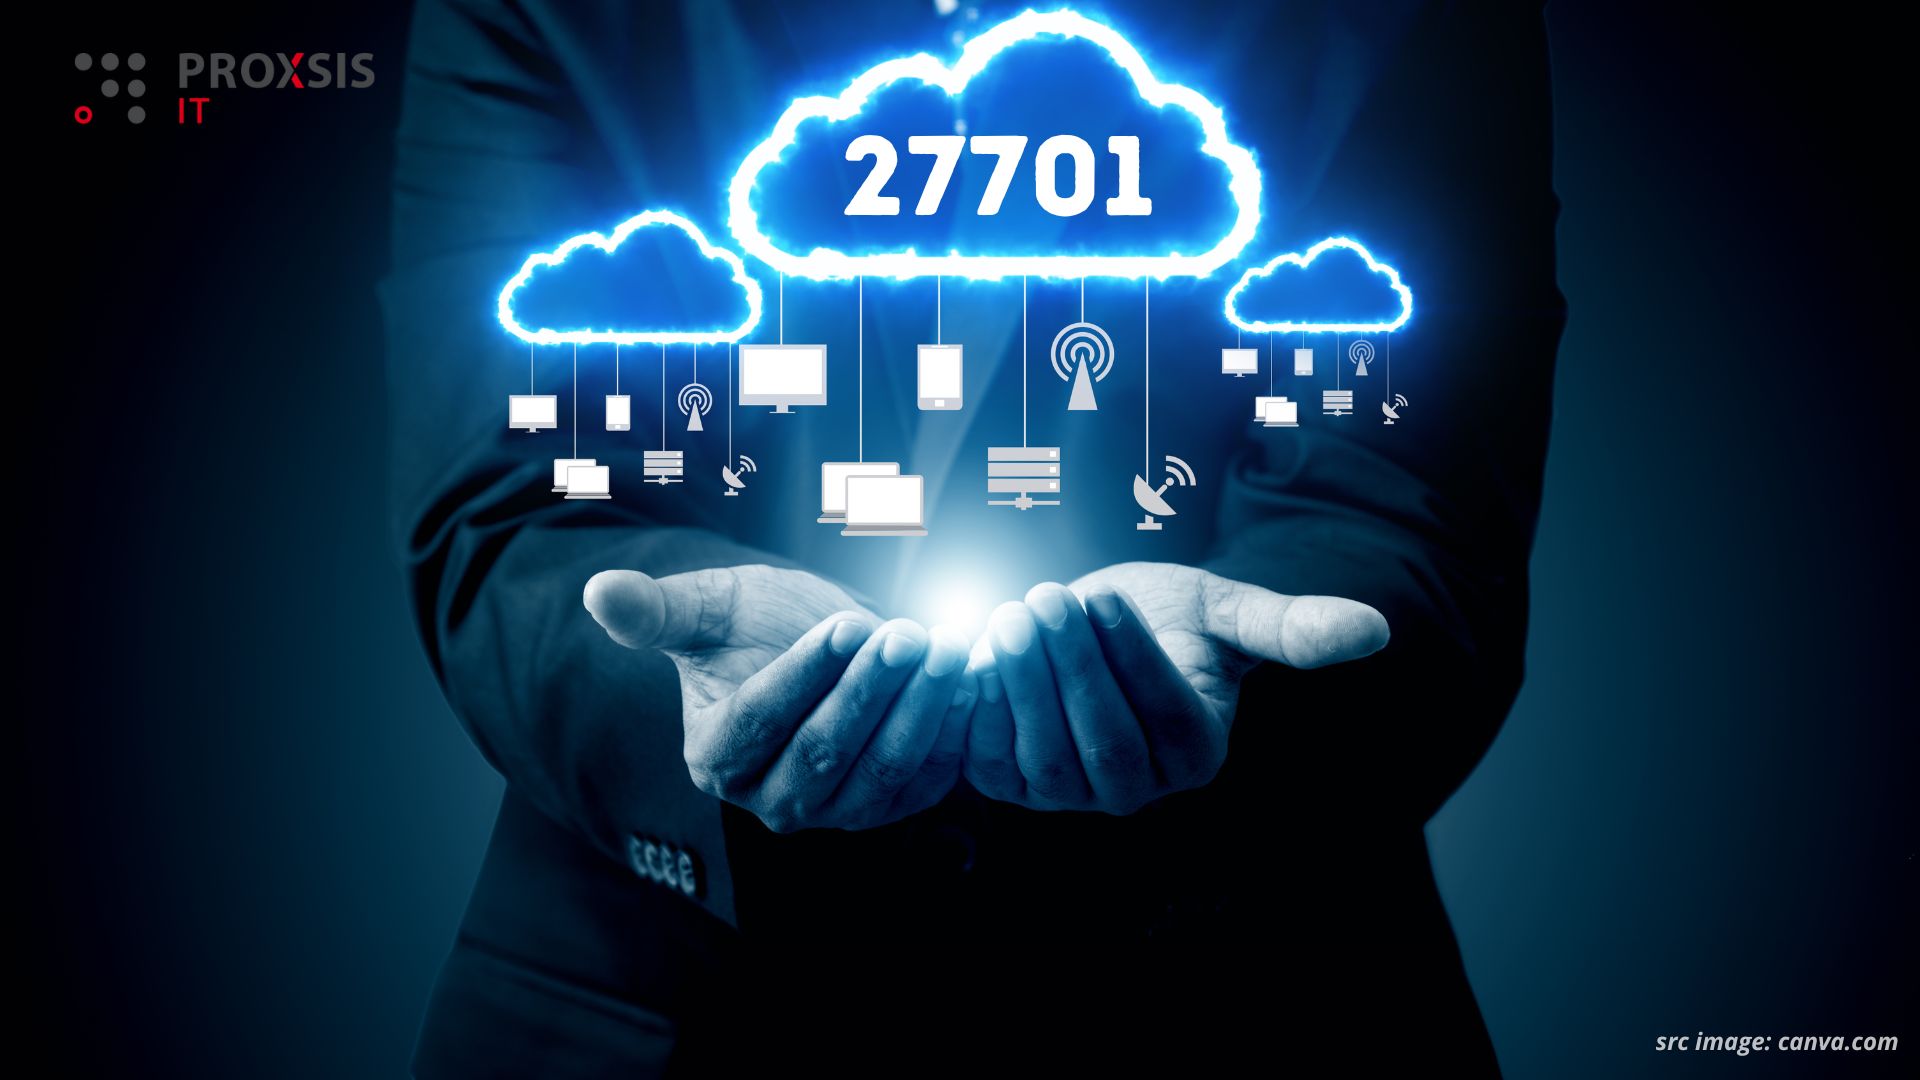 Manfaat Sertifikasi ISO 27701 bagi Layanan Cloud Computing